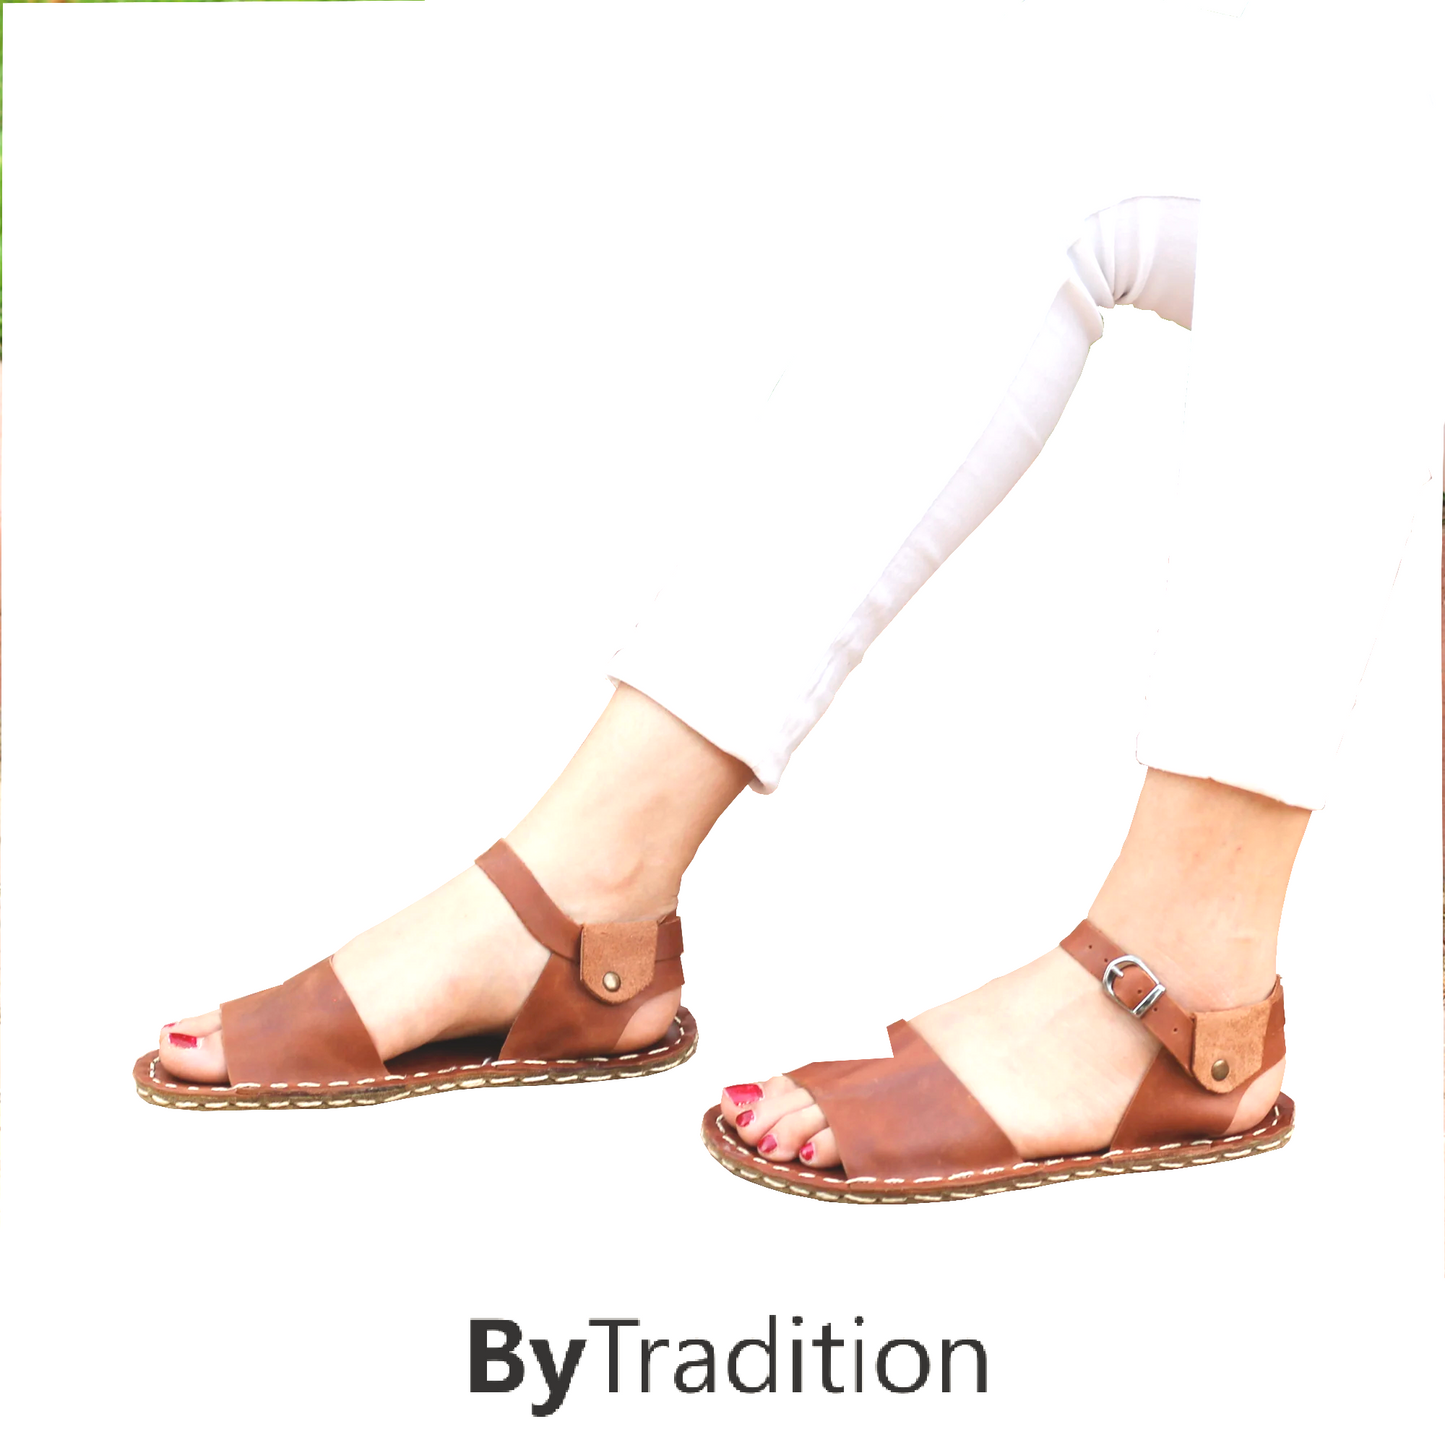 Sandale - Riemen - Natürlich und individuell barfuß - Neues Braun